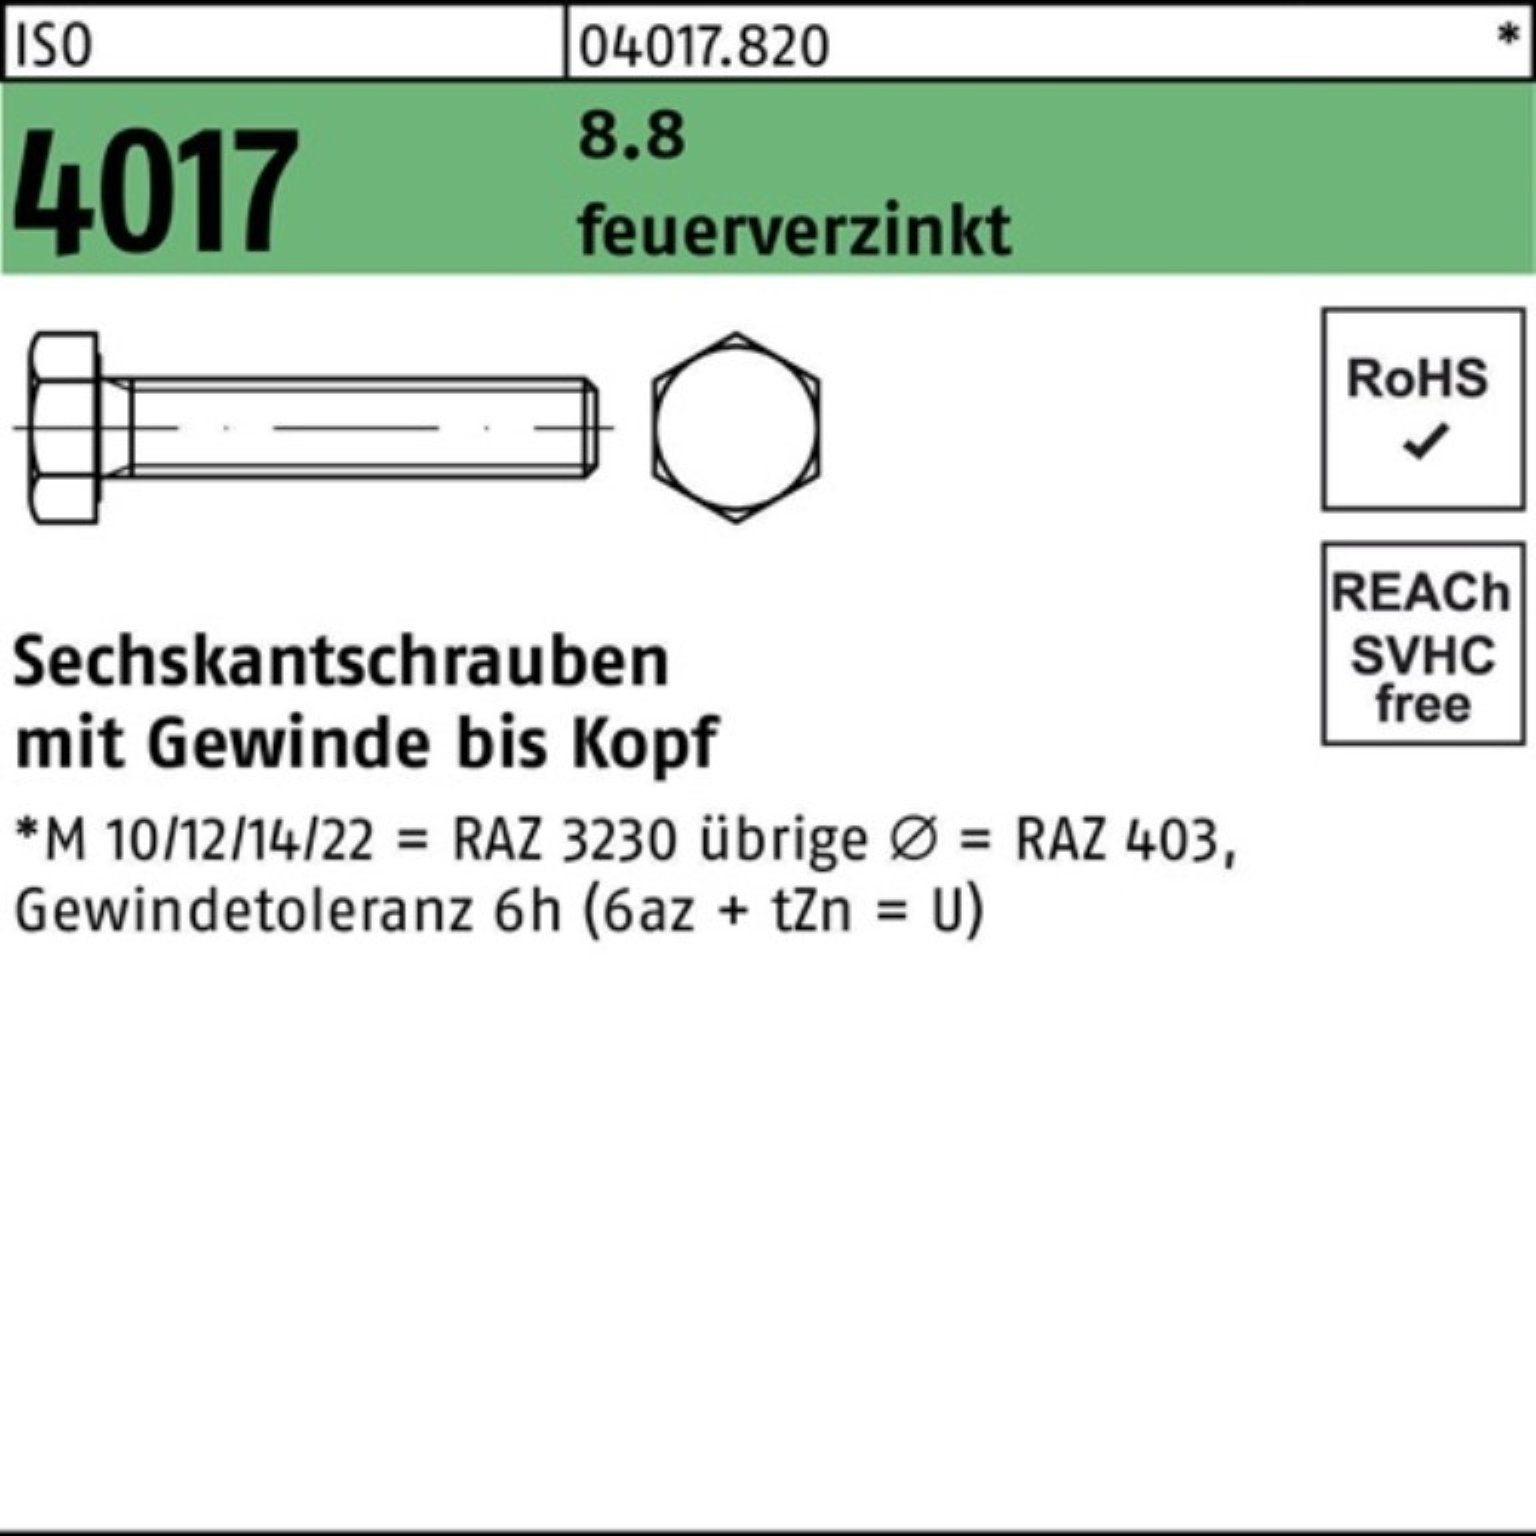 Heimatsteuer Bufab Sechskantschraube 100er Pack 4017 8.8 50 ISO feuerverz. Sechskantschraube St M16x VG 50